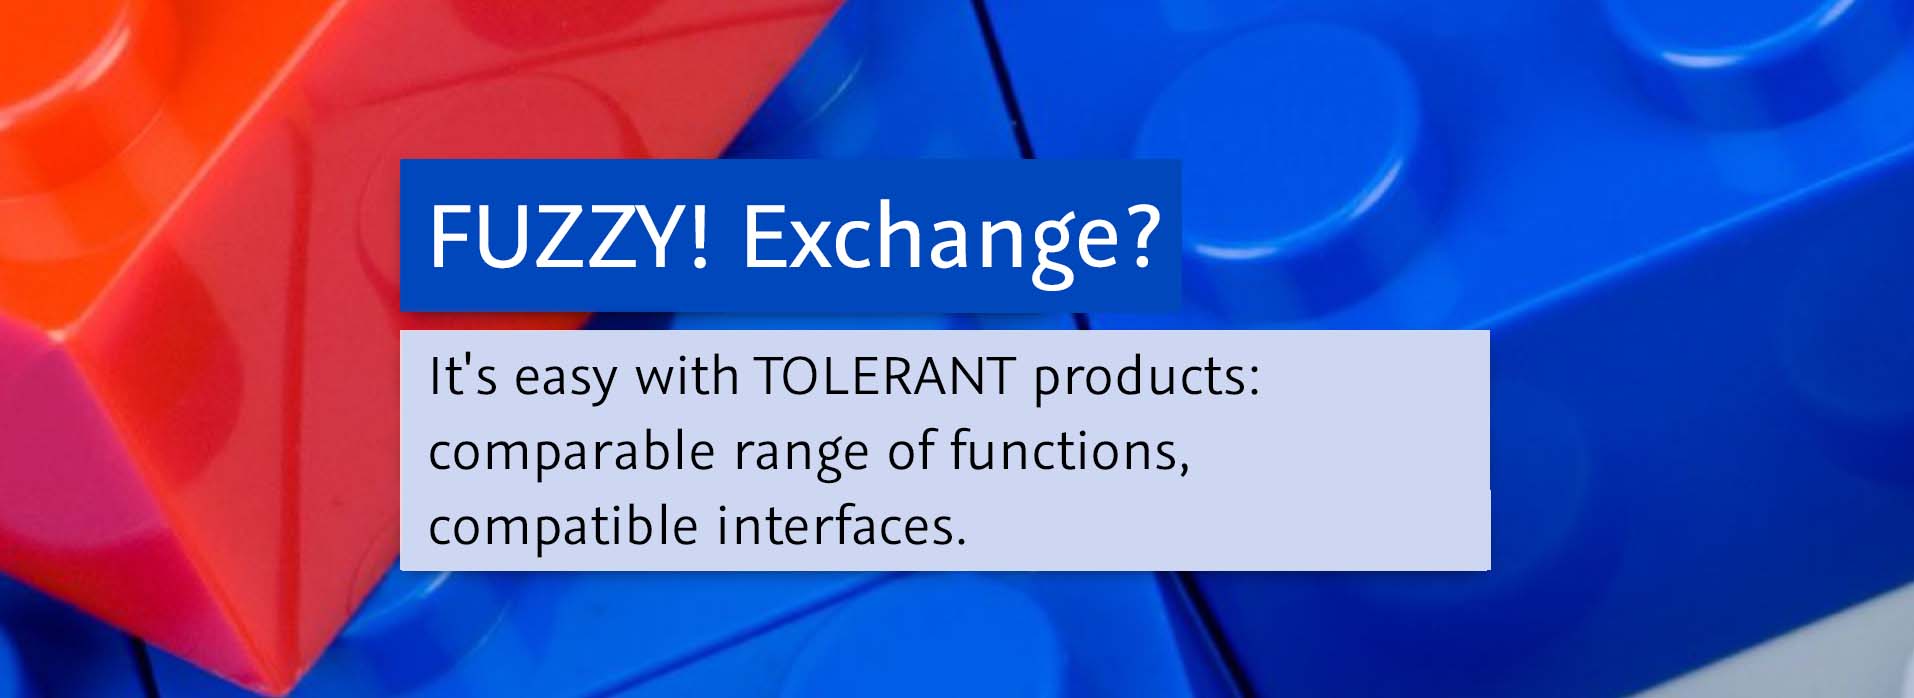 Fuzzy! Exchange?